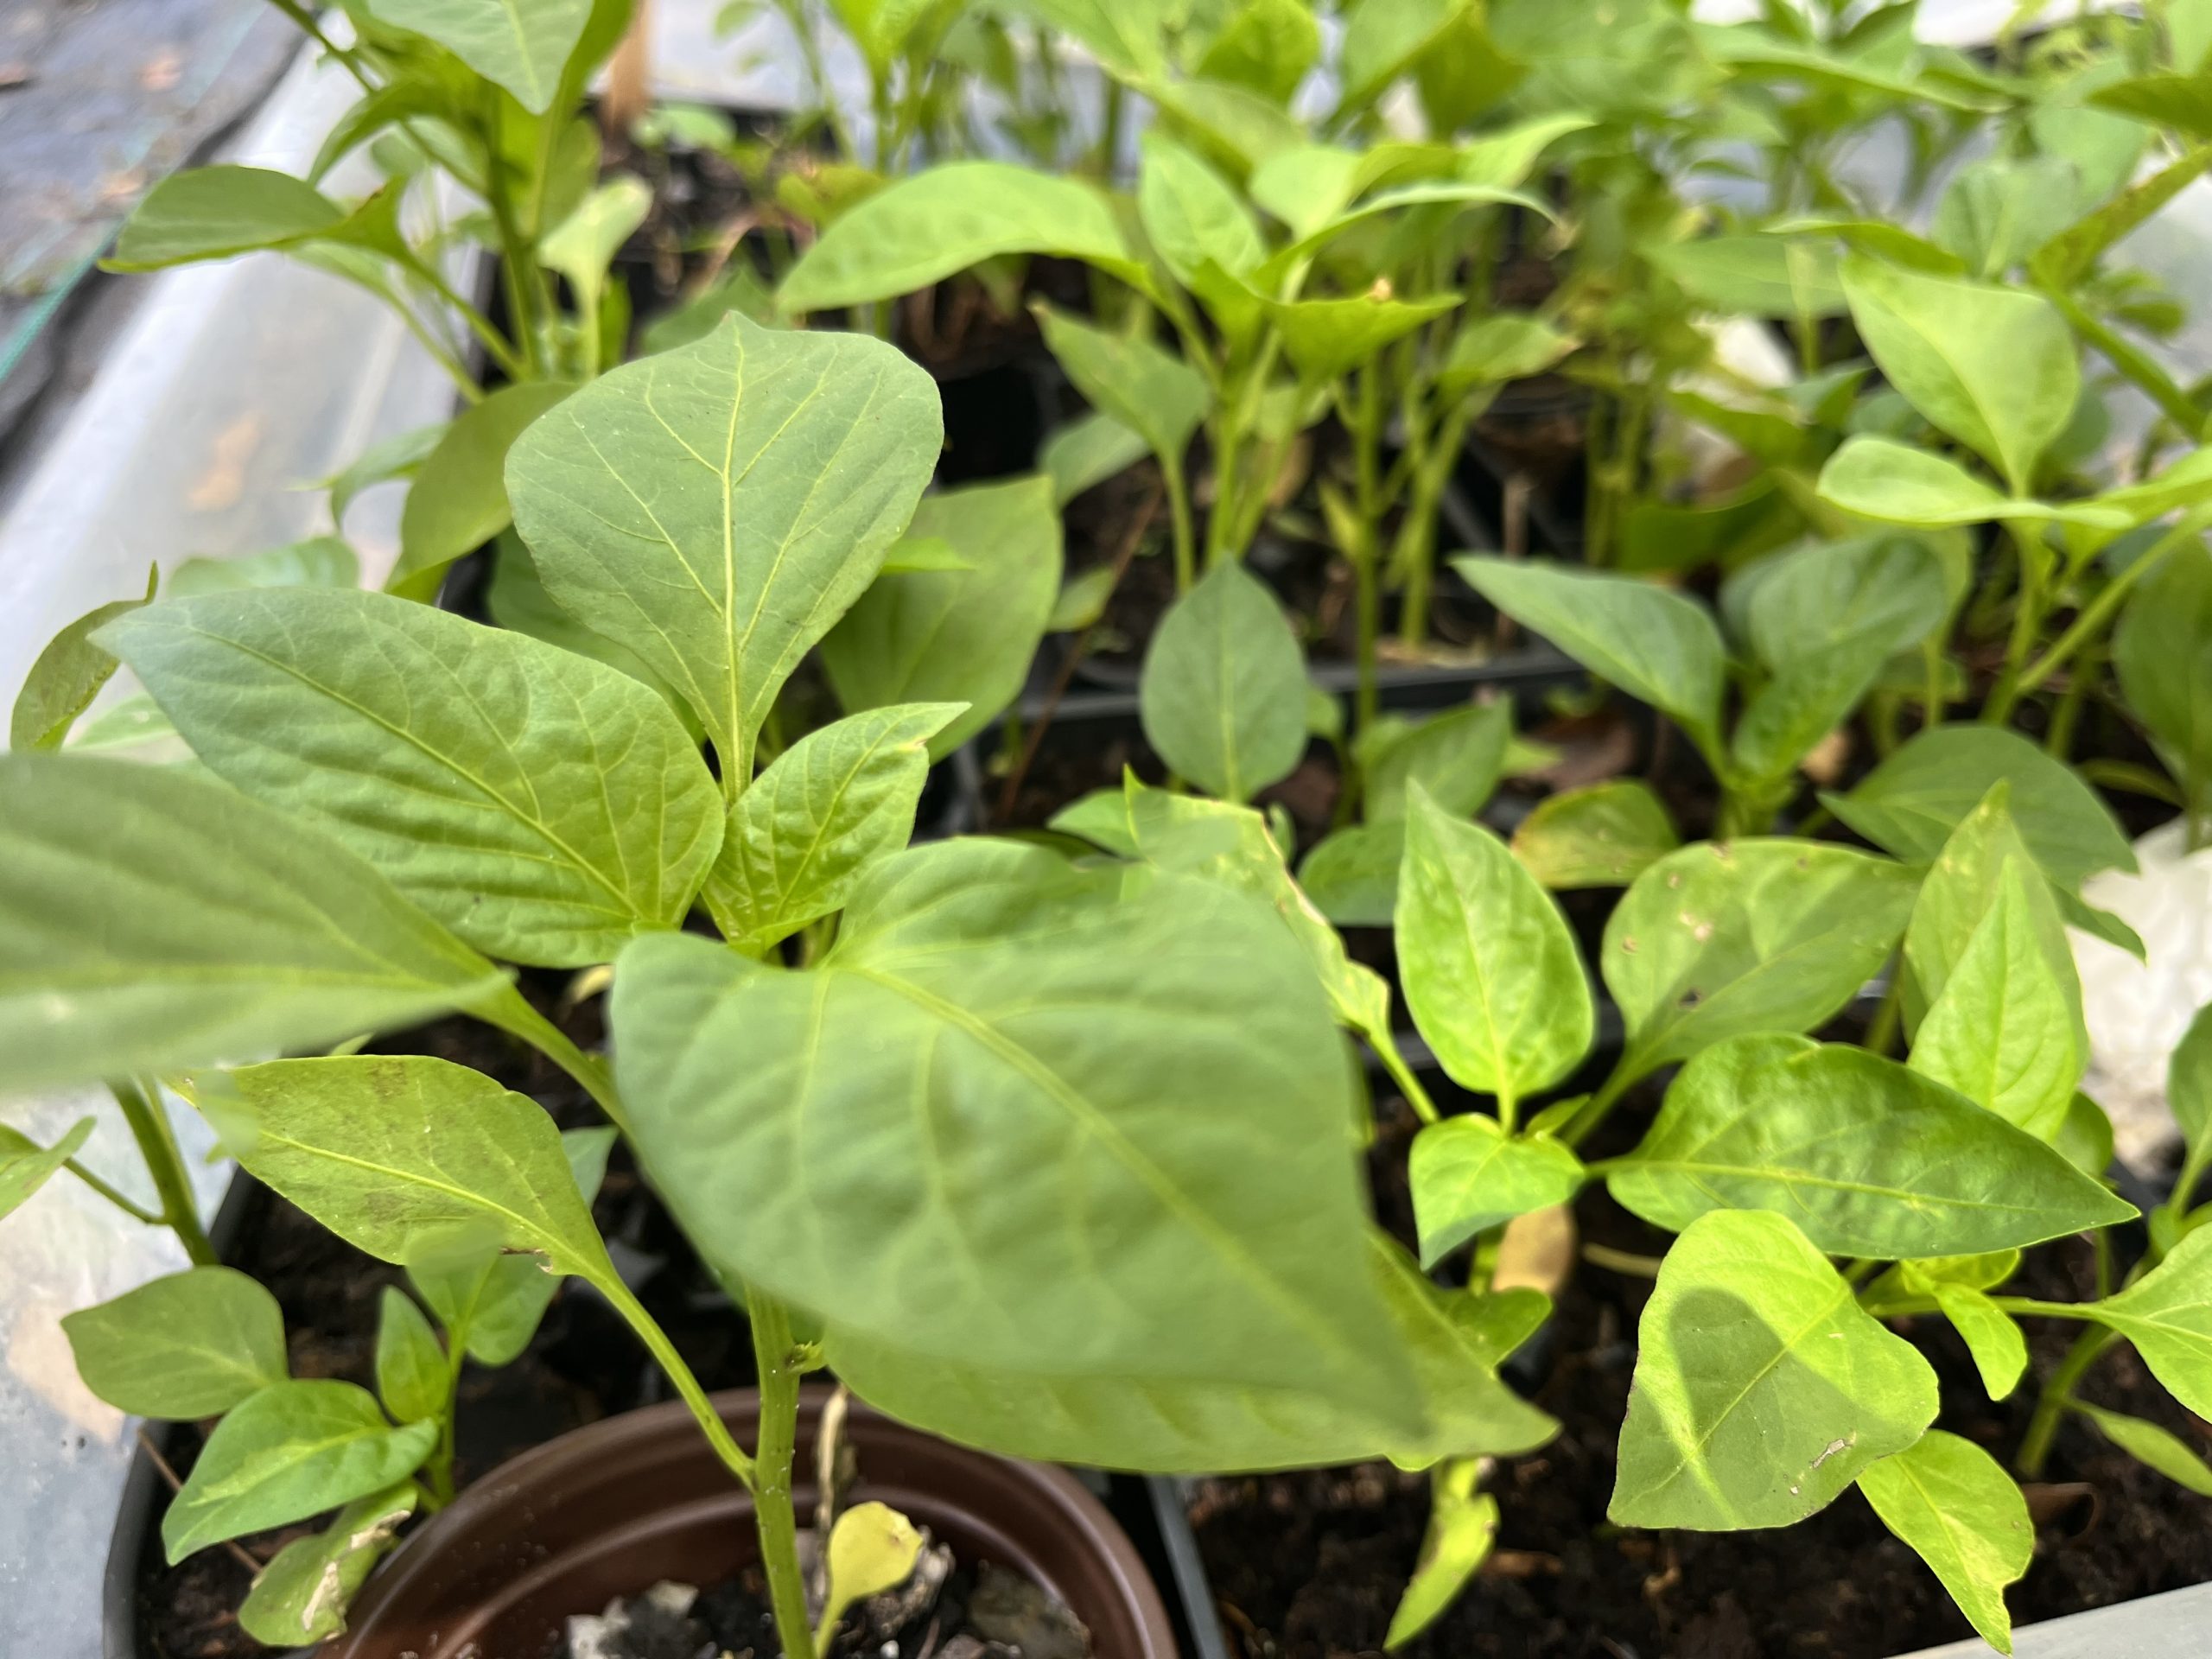 datil pepper plants